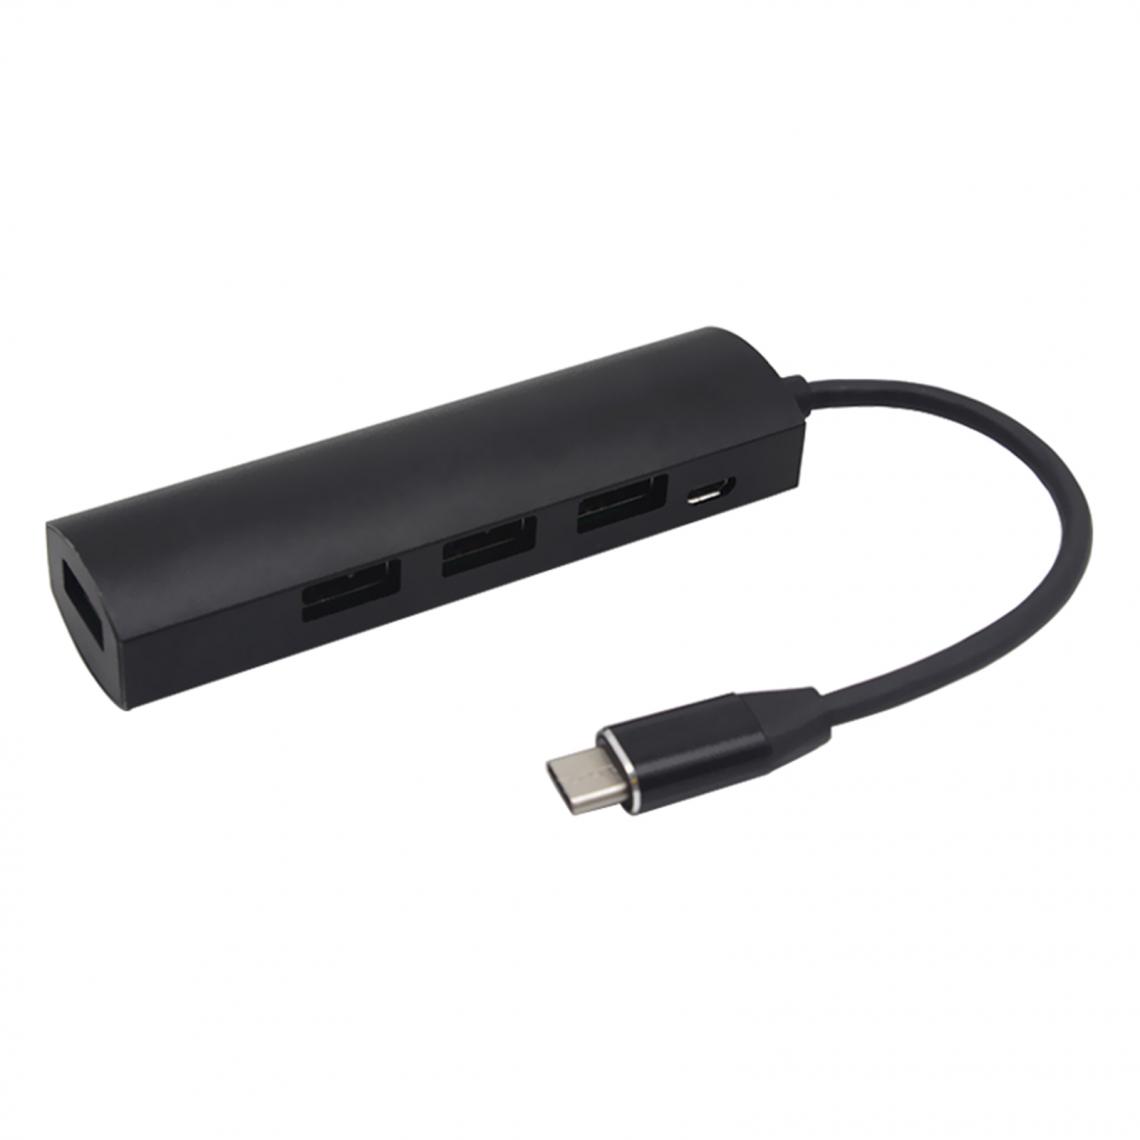 marque generique - Connecteurs Hub USB Type-C Câble Adaptateur USB 3.0 2.0 Pour MacBook Gris - Hub